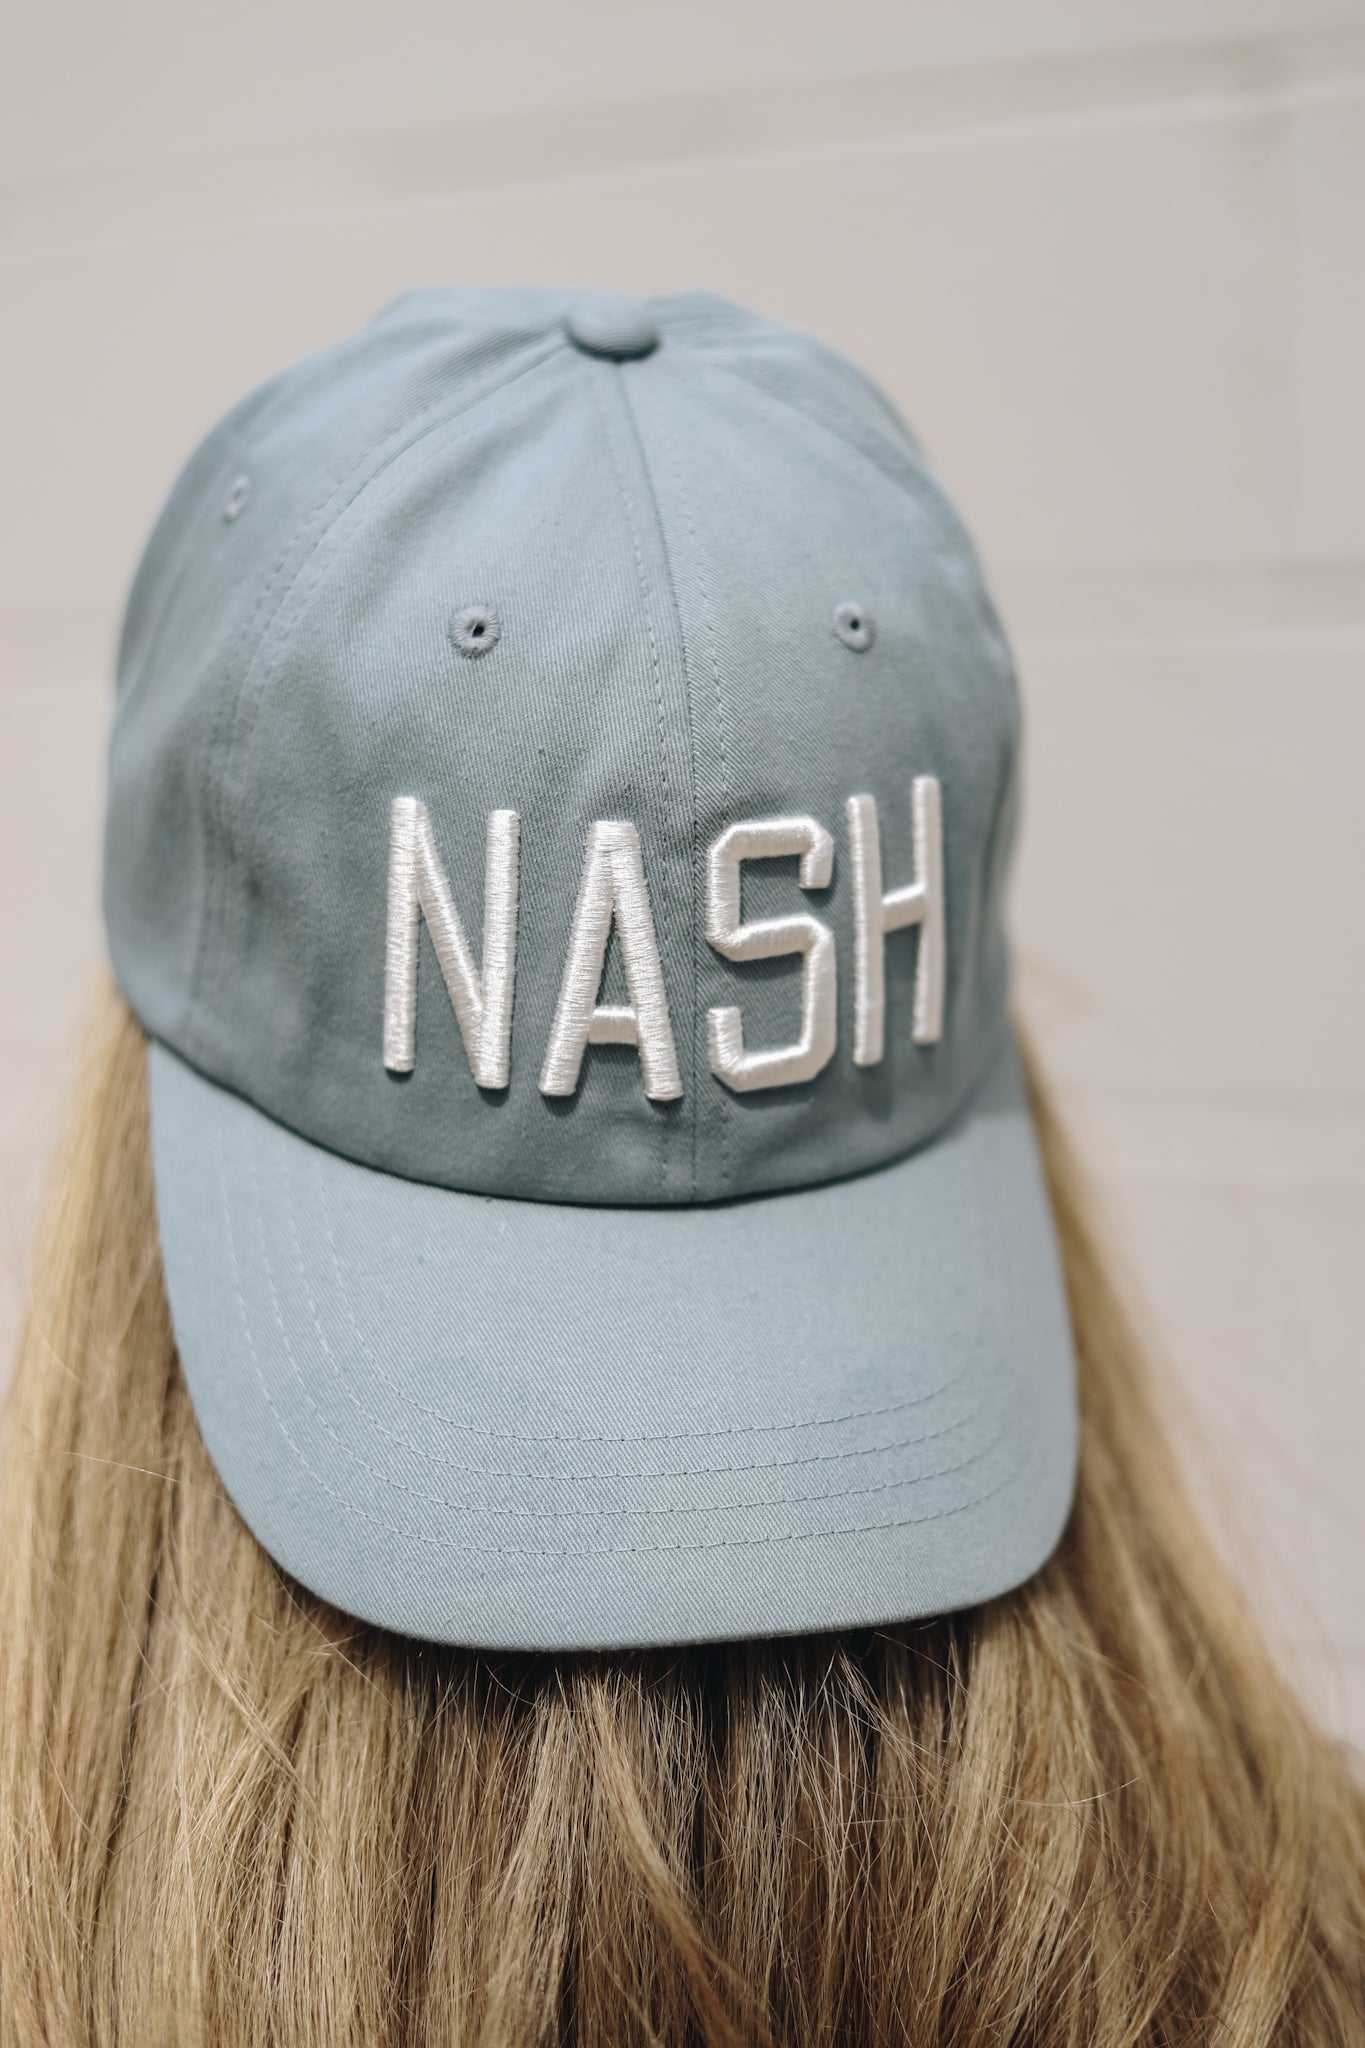 NASH Ball Cap [Light Blue]